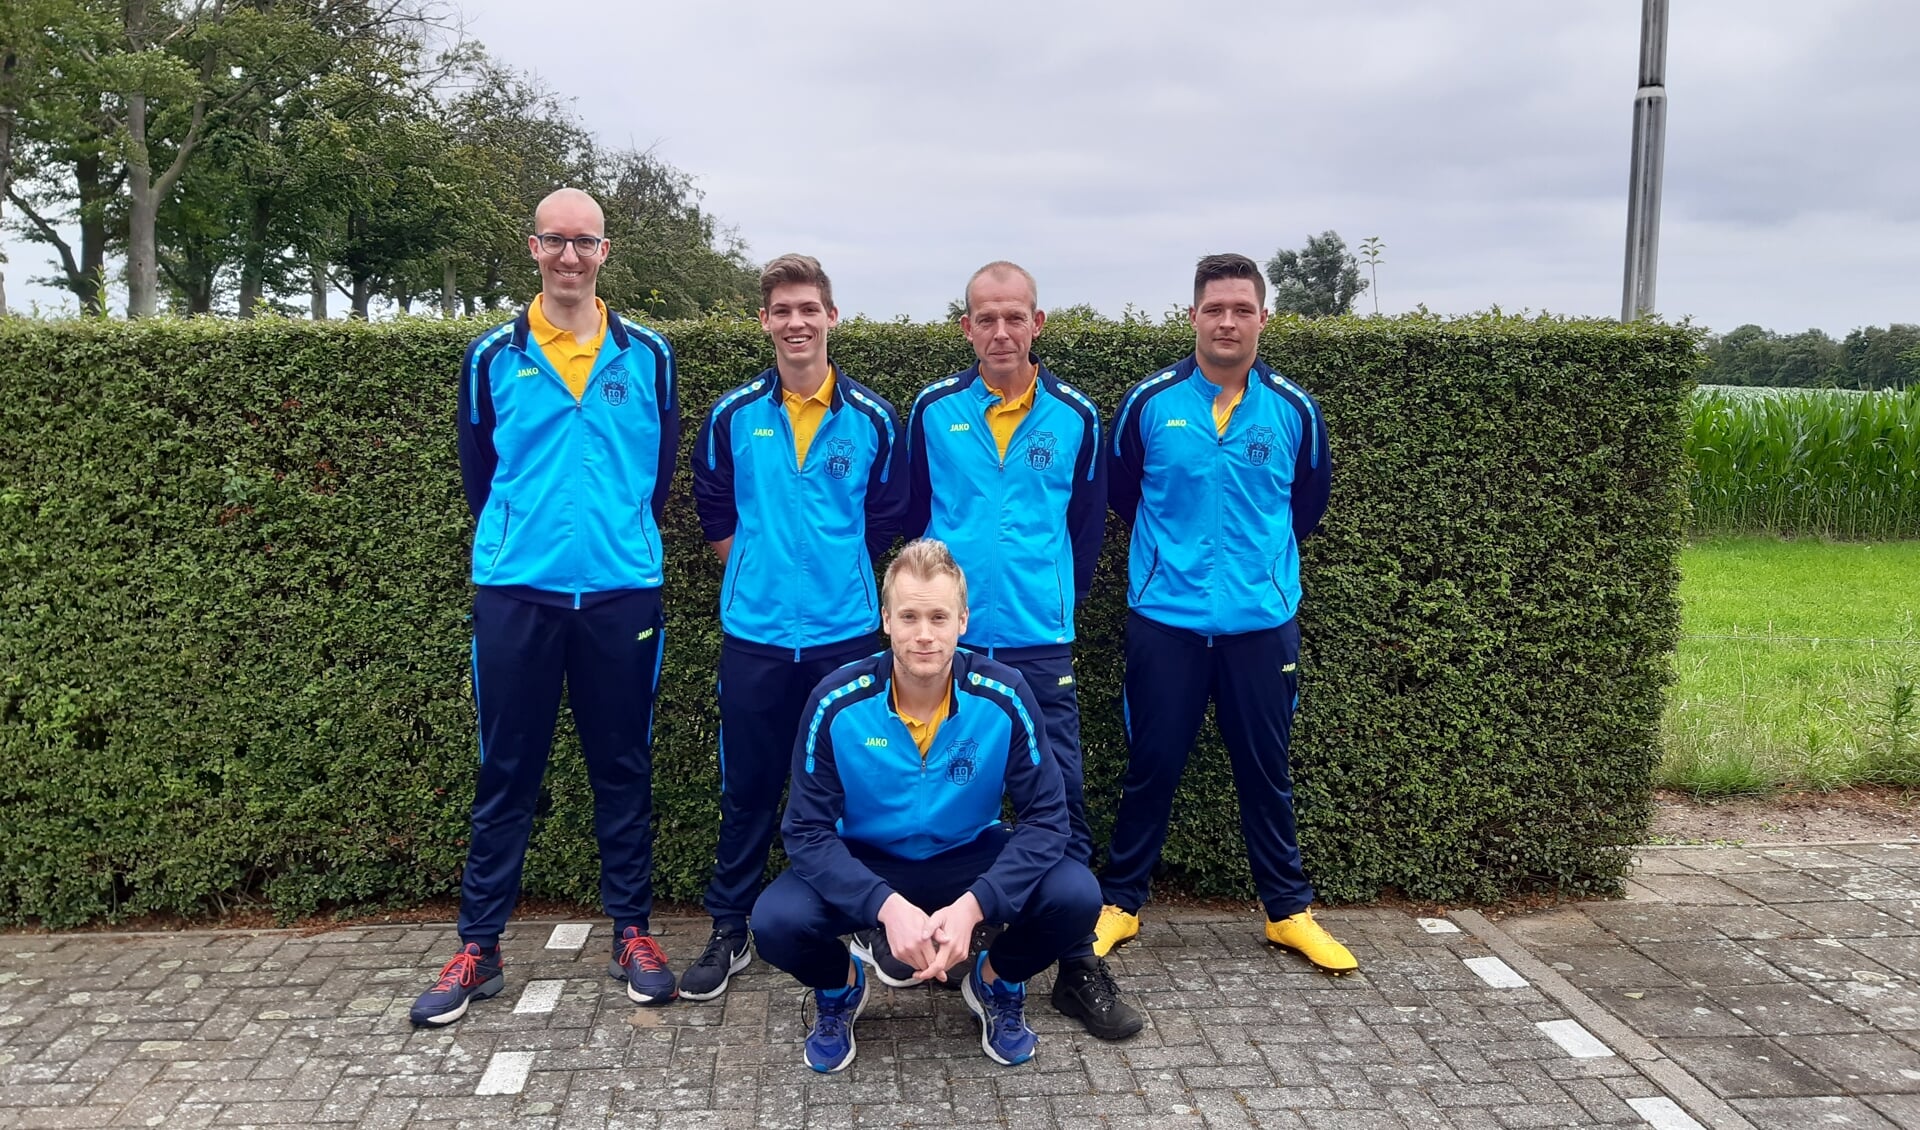 het eerste team van KV Zwolle, staand van links naar rechts: Niek Smeenk, Tim te Bogt, André Rooks en Ramon Halleriet. Zittend voor Jurgen te Brake. Arno te Brake was verhinderd op het fotomoment en ontbreekt daarom deze foto. Foto: PR